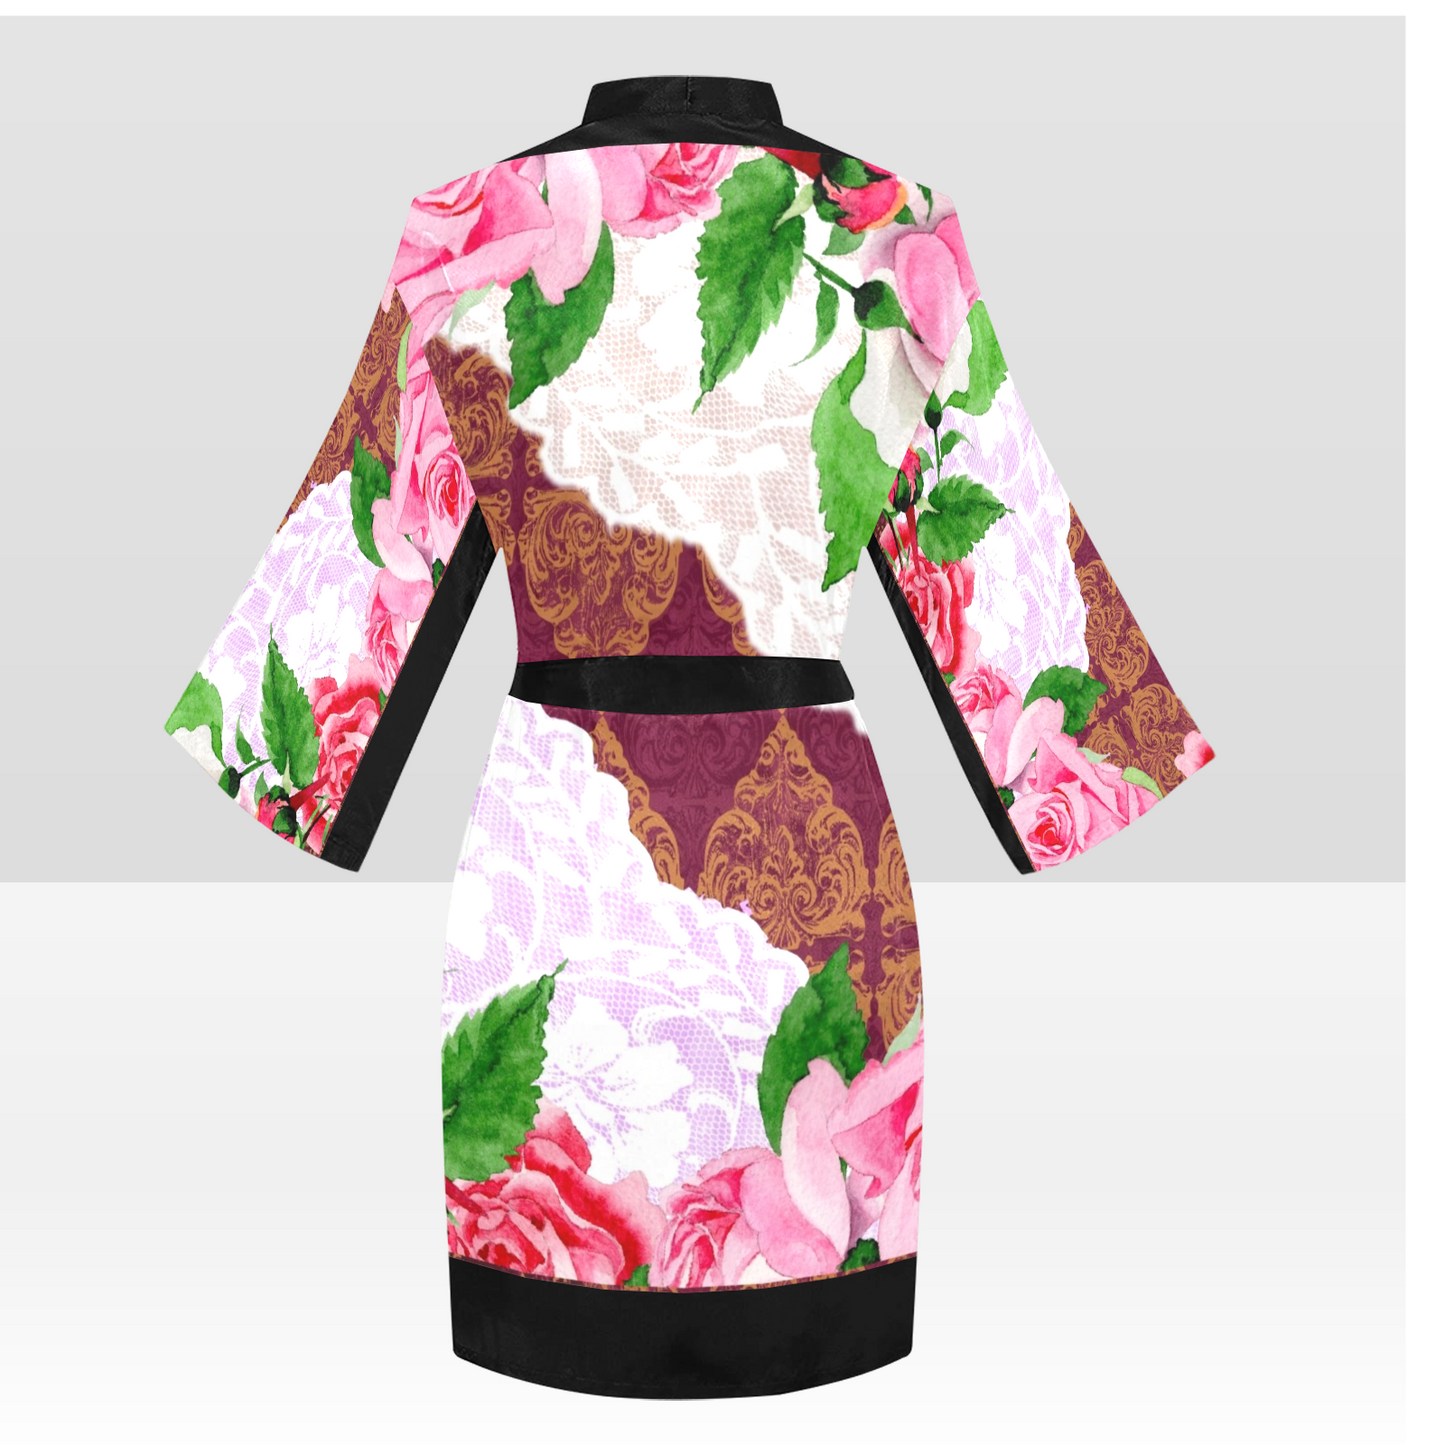 Victorian Lace Kimono Robe, Black or White Trim, Sizes XS to 2XL, Design 19